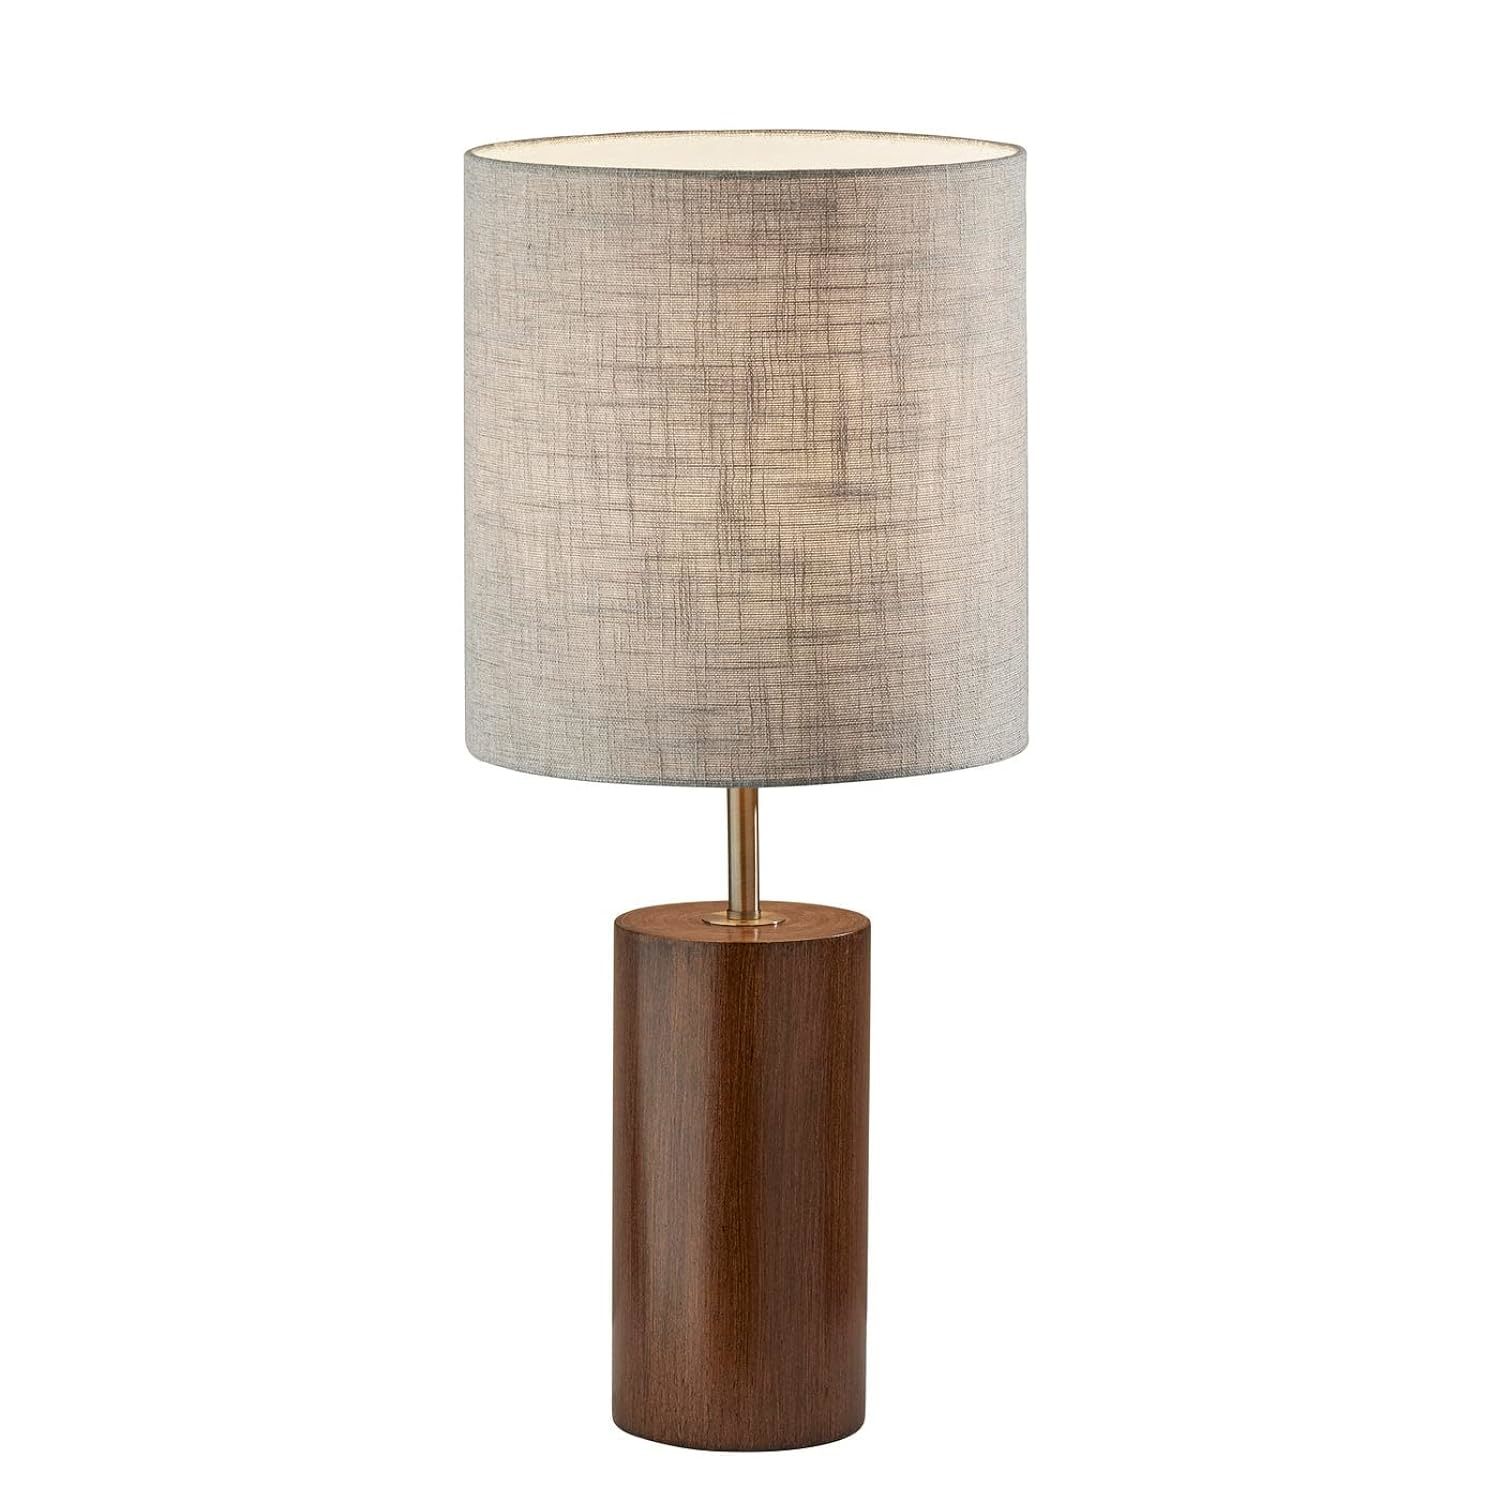 Adesso Dean Table Lamp - $222.29